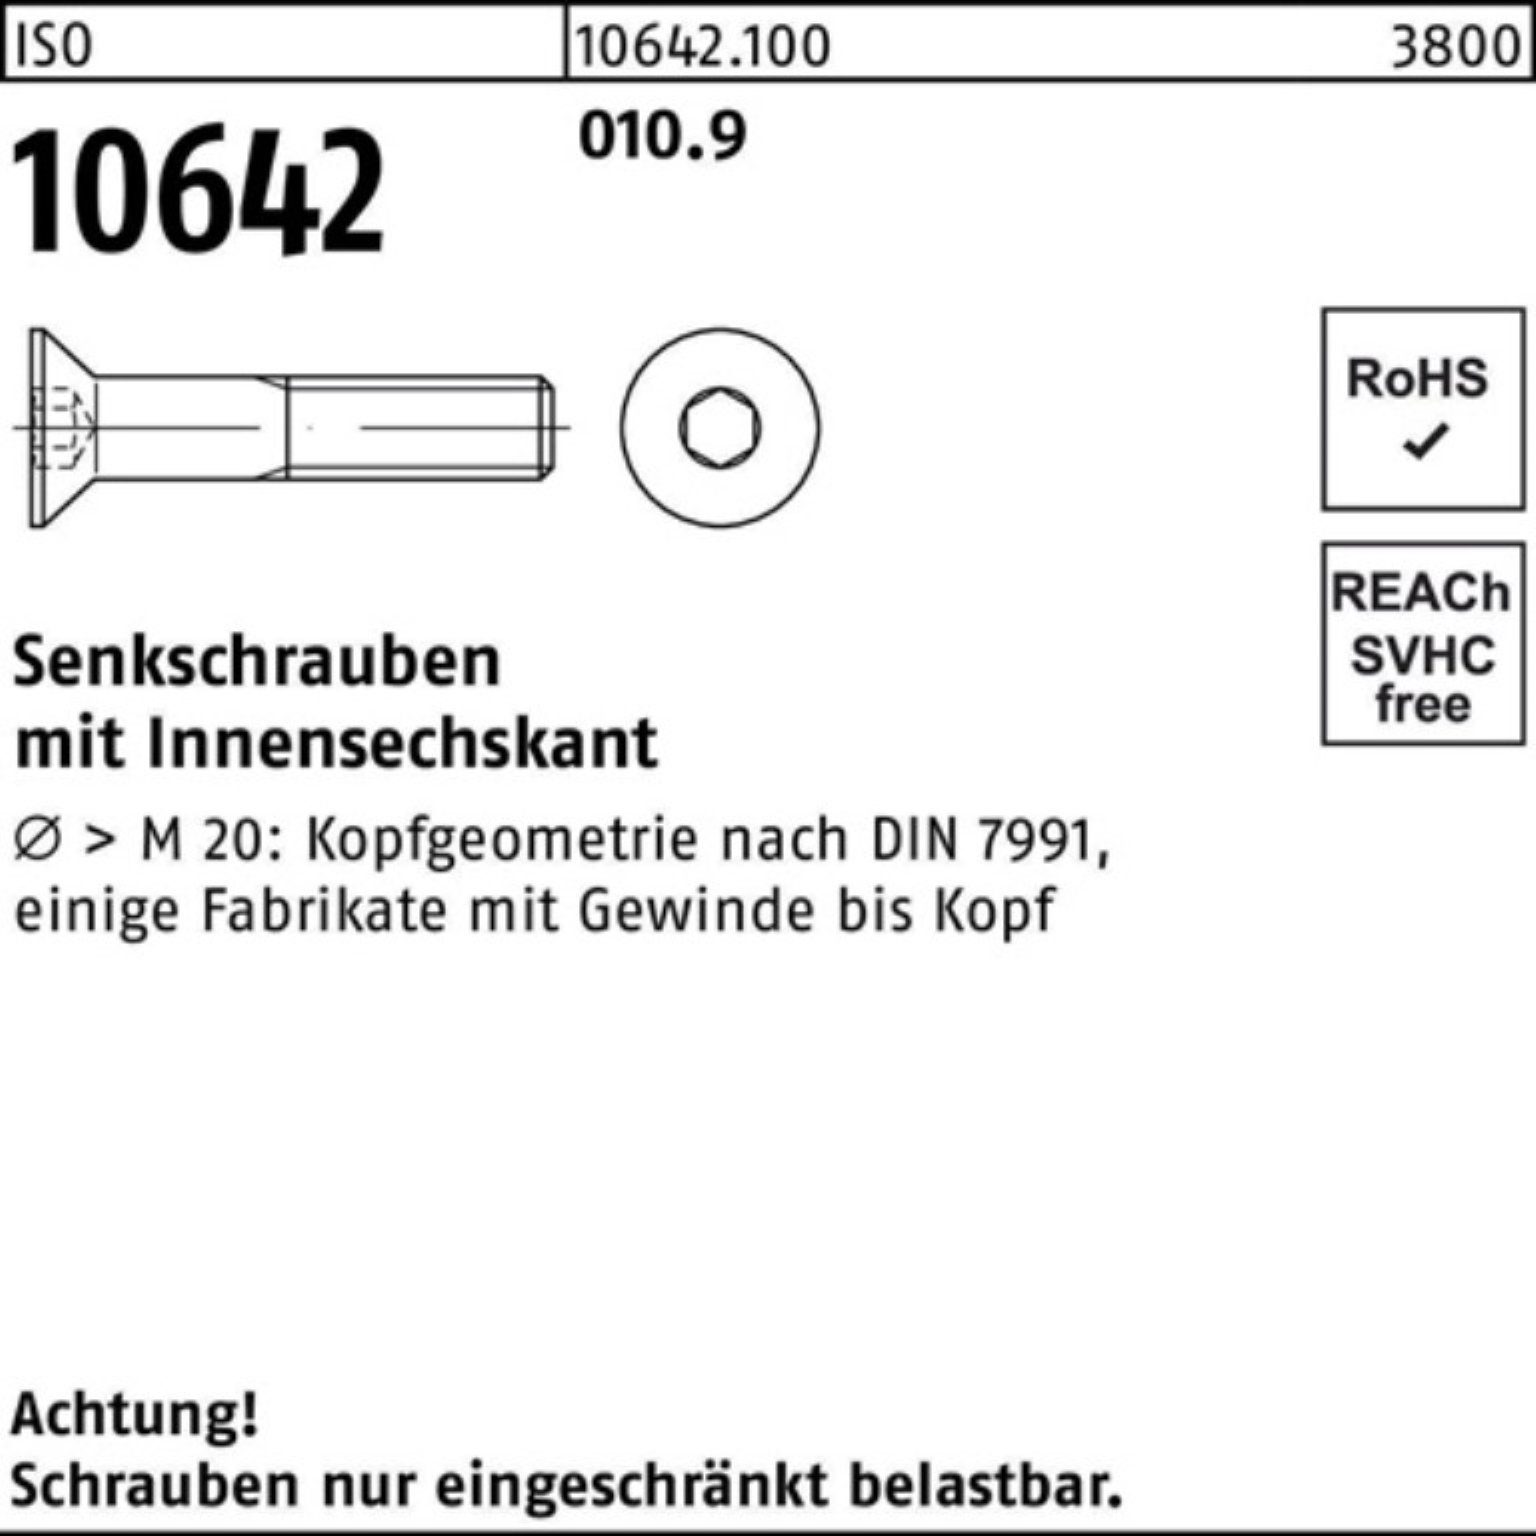 Innen-6kt 10642 100 I Pack Senkschraube ISO 100er Reyher 010.9 Senkschraube Stück 60 M10x